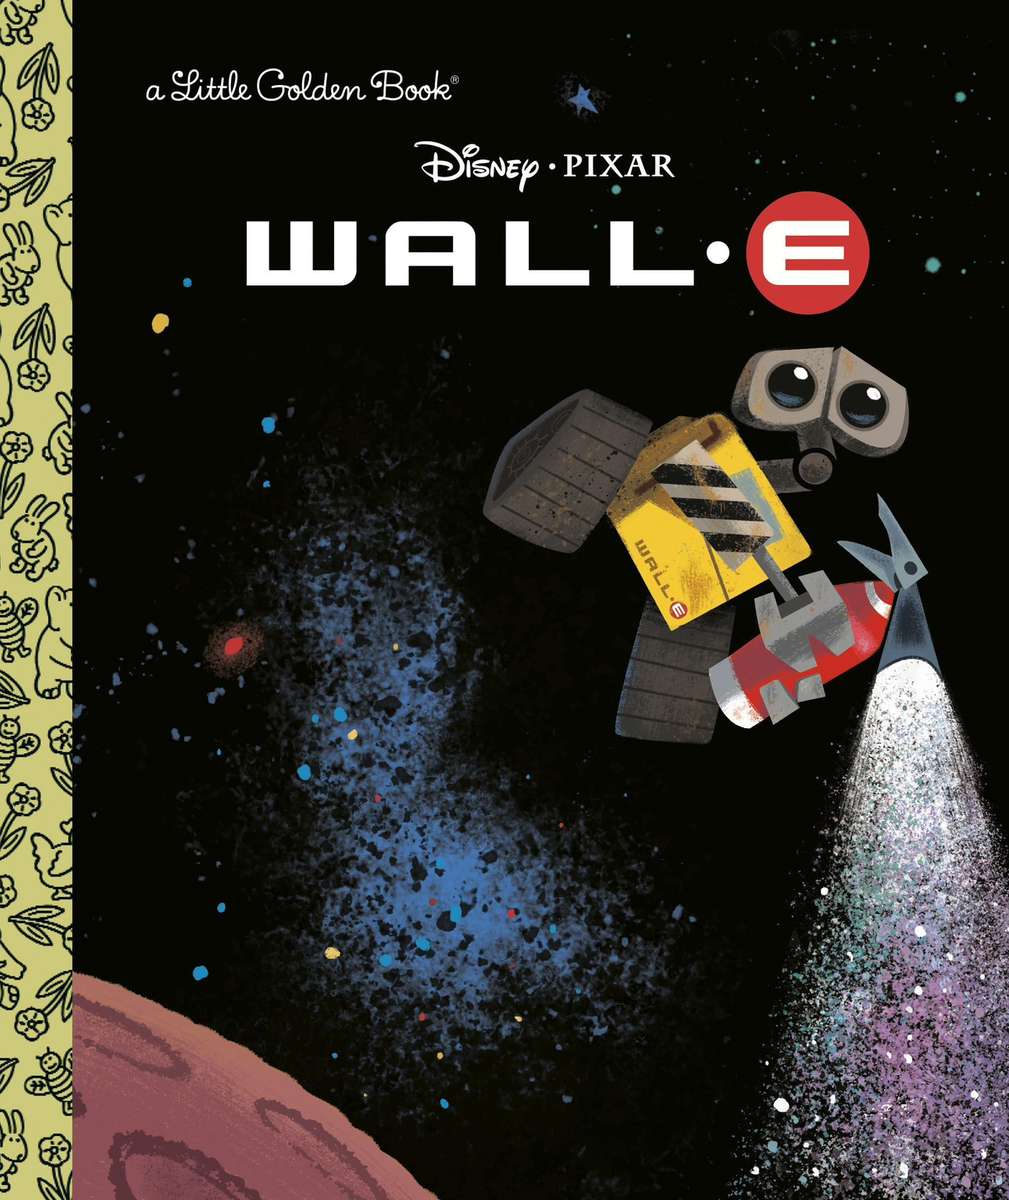 Wall-E (En liten gyllene bok) pussel på nätet